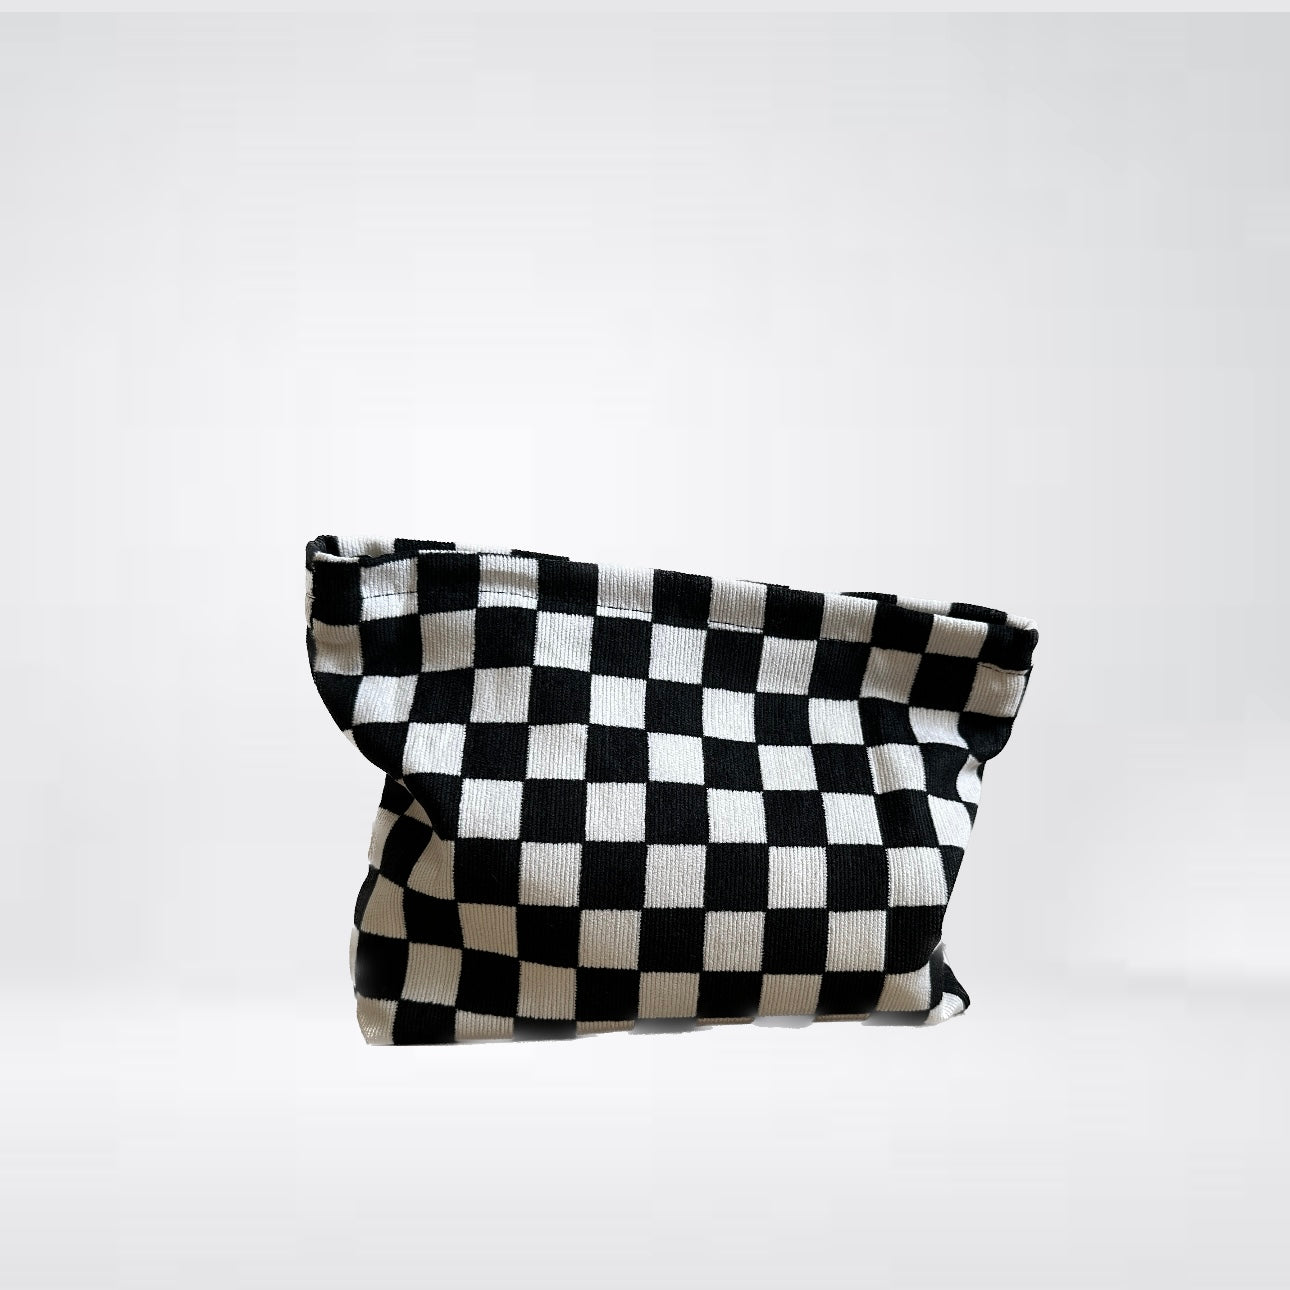 Clutch Bag Kosmetikbeutel "Checker" mit Karomuster aus Feinkord in Schwarz-Weiß